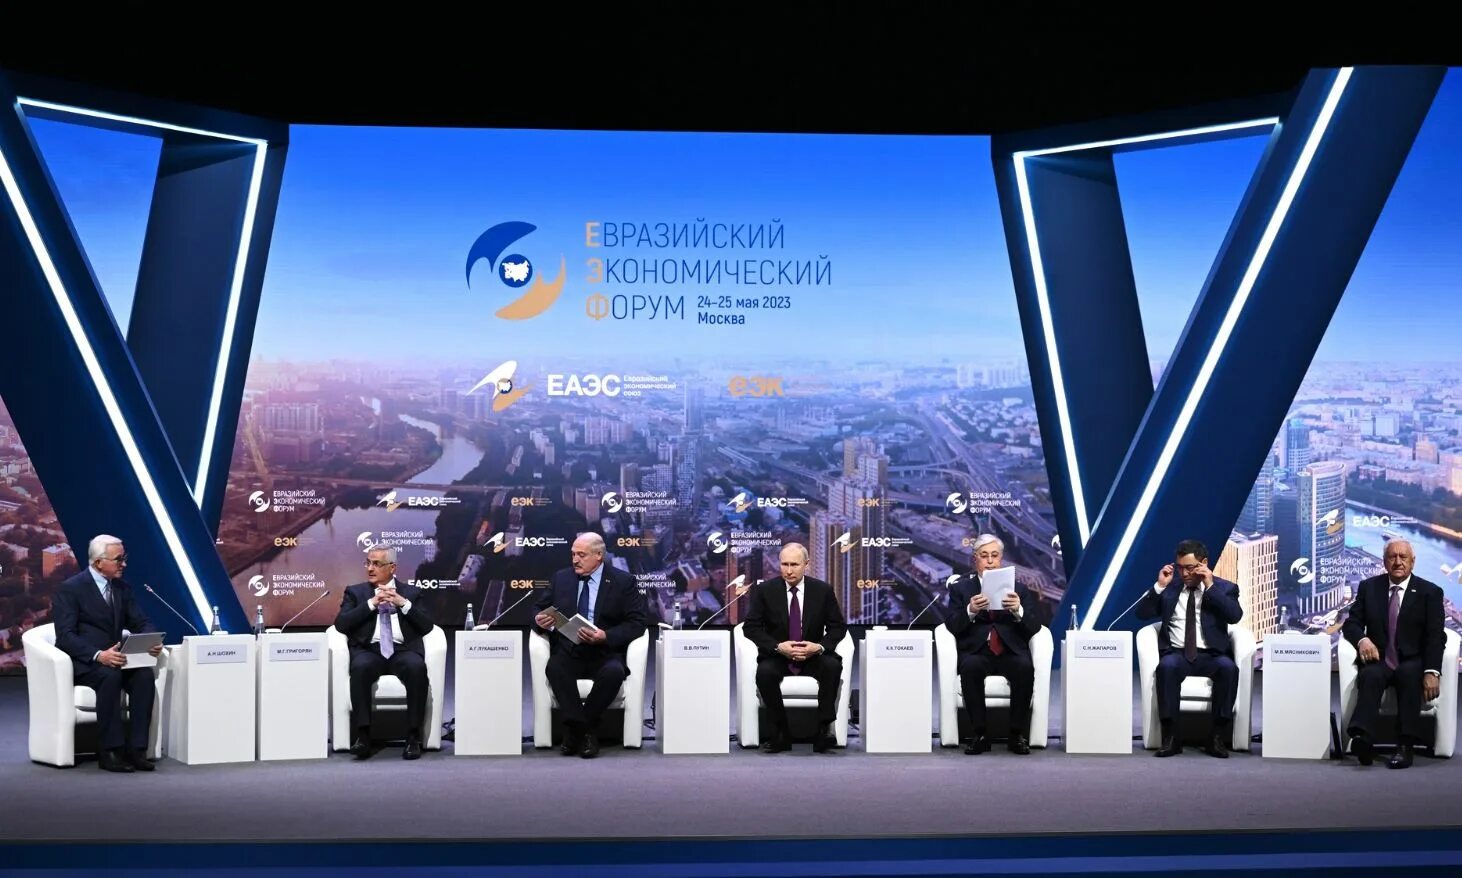 Евразийский экономический форум. Предприниматели России. Евразийский саммит 2023 Москва. Выступление лидера.